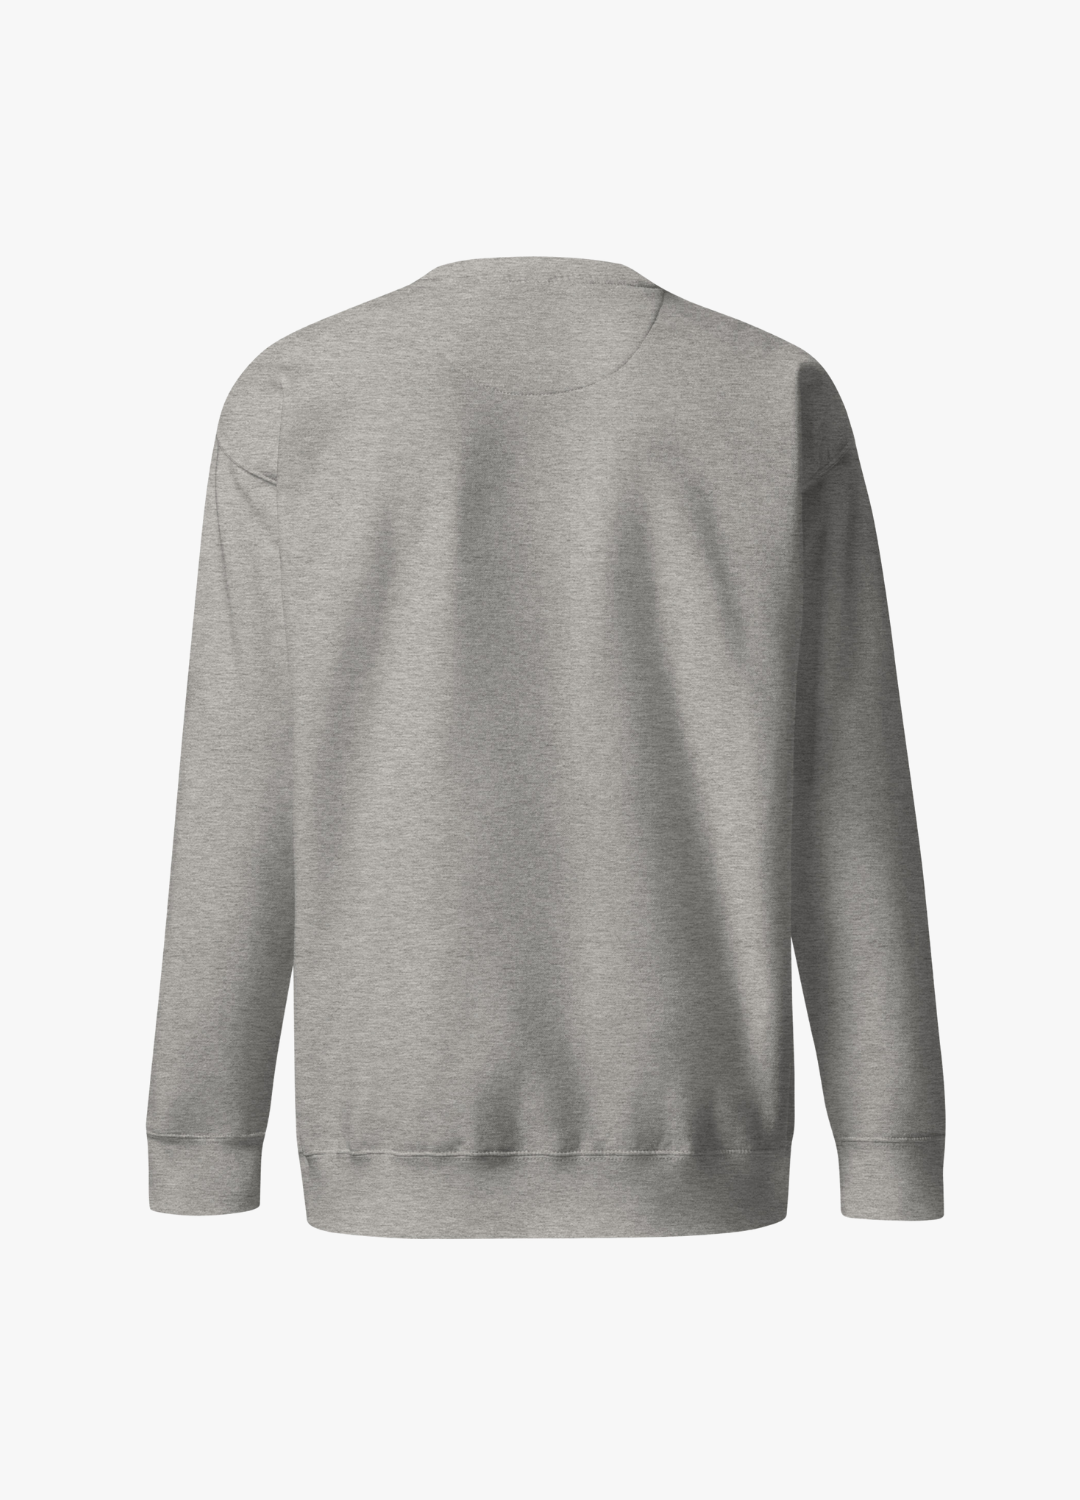 sweatshirt en coton léger unisexe gris clair avec broderie à l'avant d'un chaton kawaii qui fait un doigt d'honneur